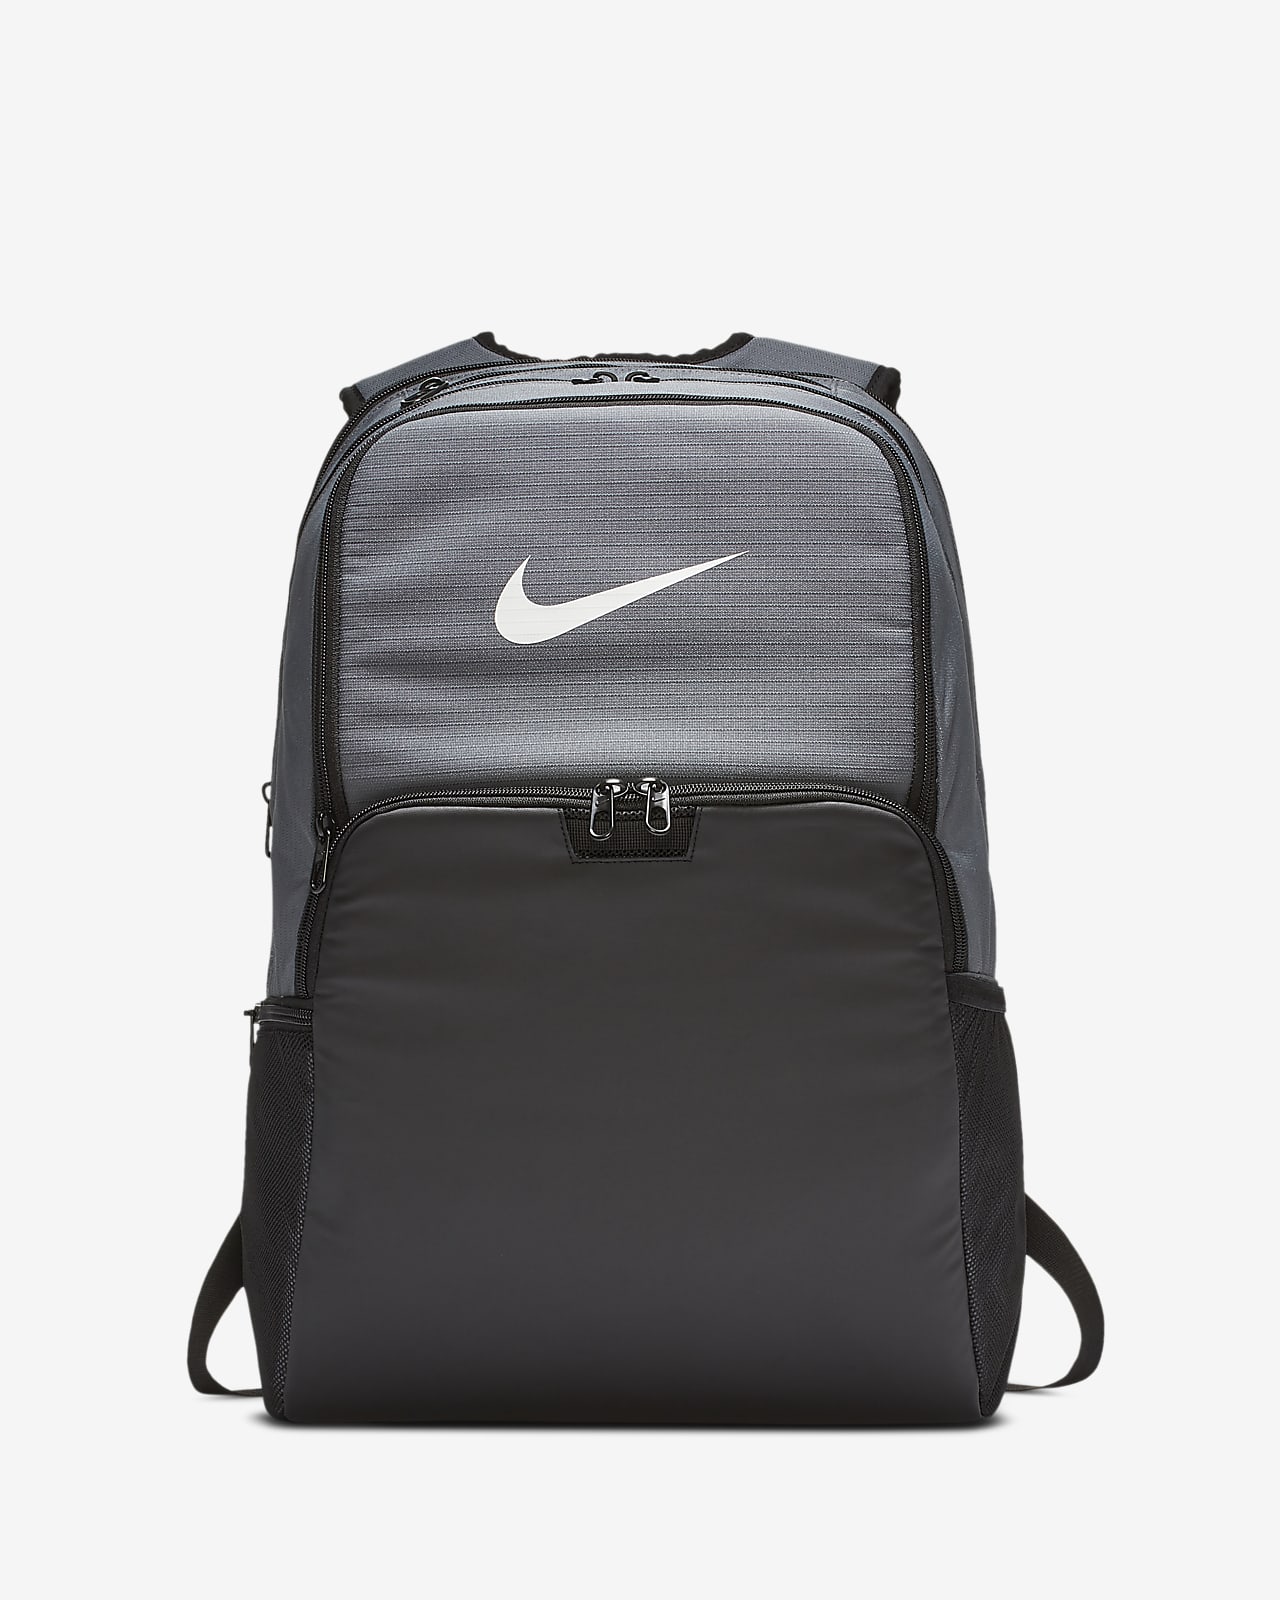 grey and black nike backpack